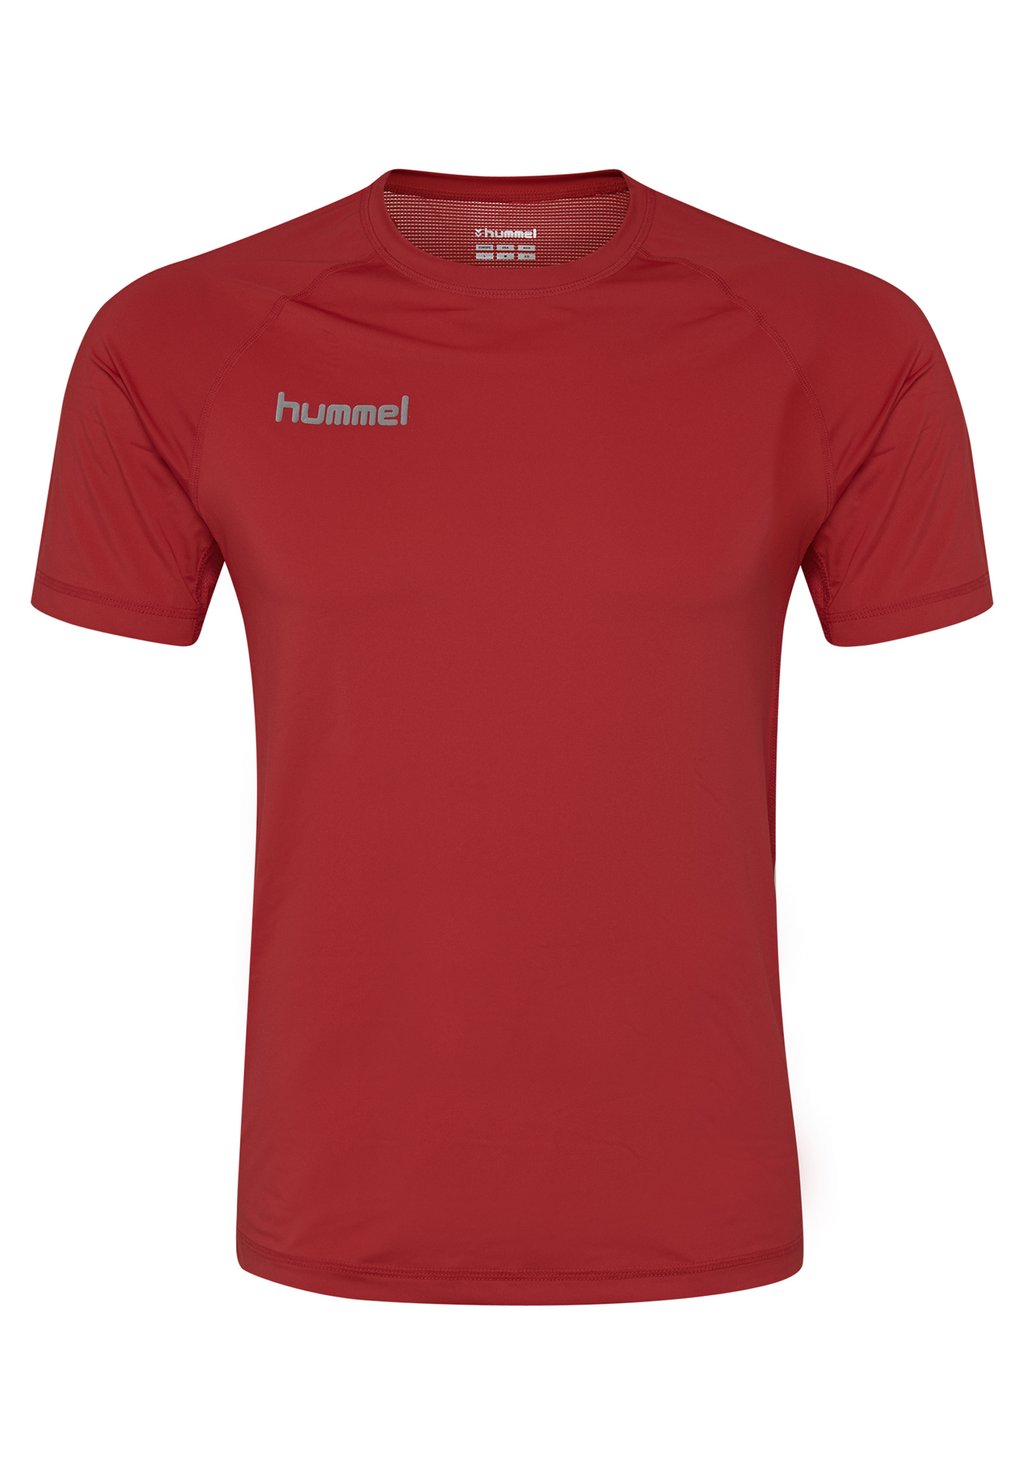 Футболка с принтом Hummel, цвет true red футболка с принтом authentic hummel цвет true red